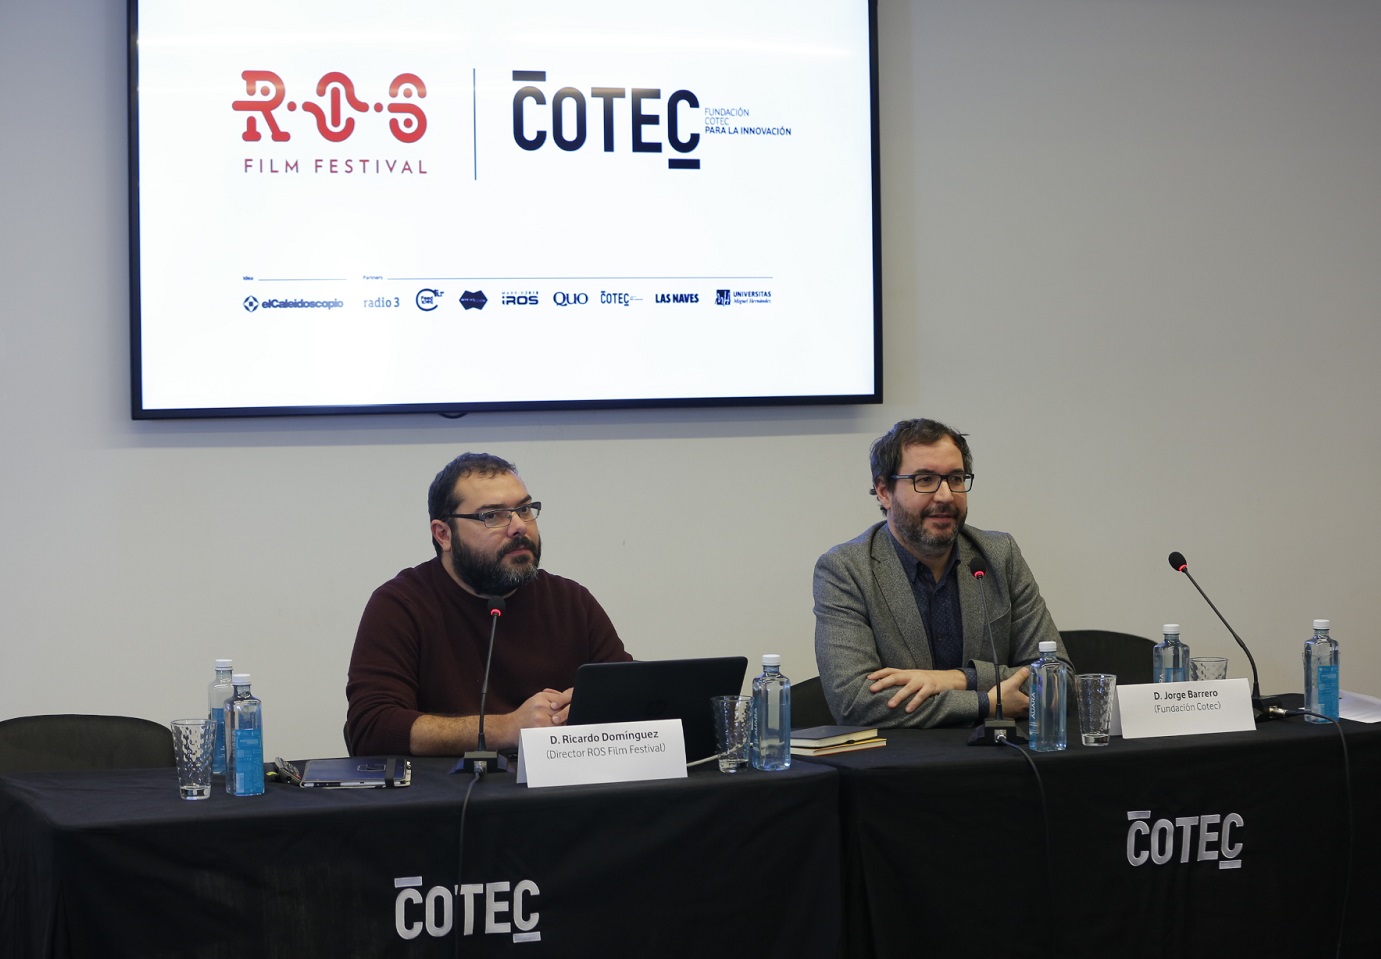 Cotec impulsa el Ros Film Festival, primer concurso internacional de cortos protagonizados por robots